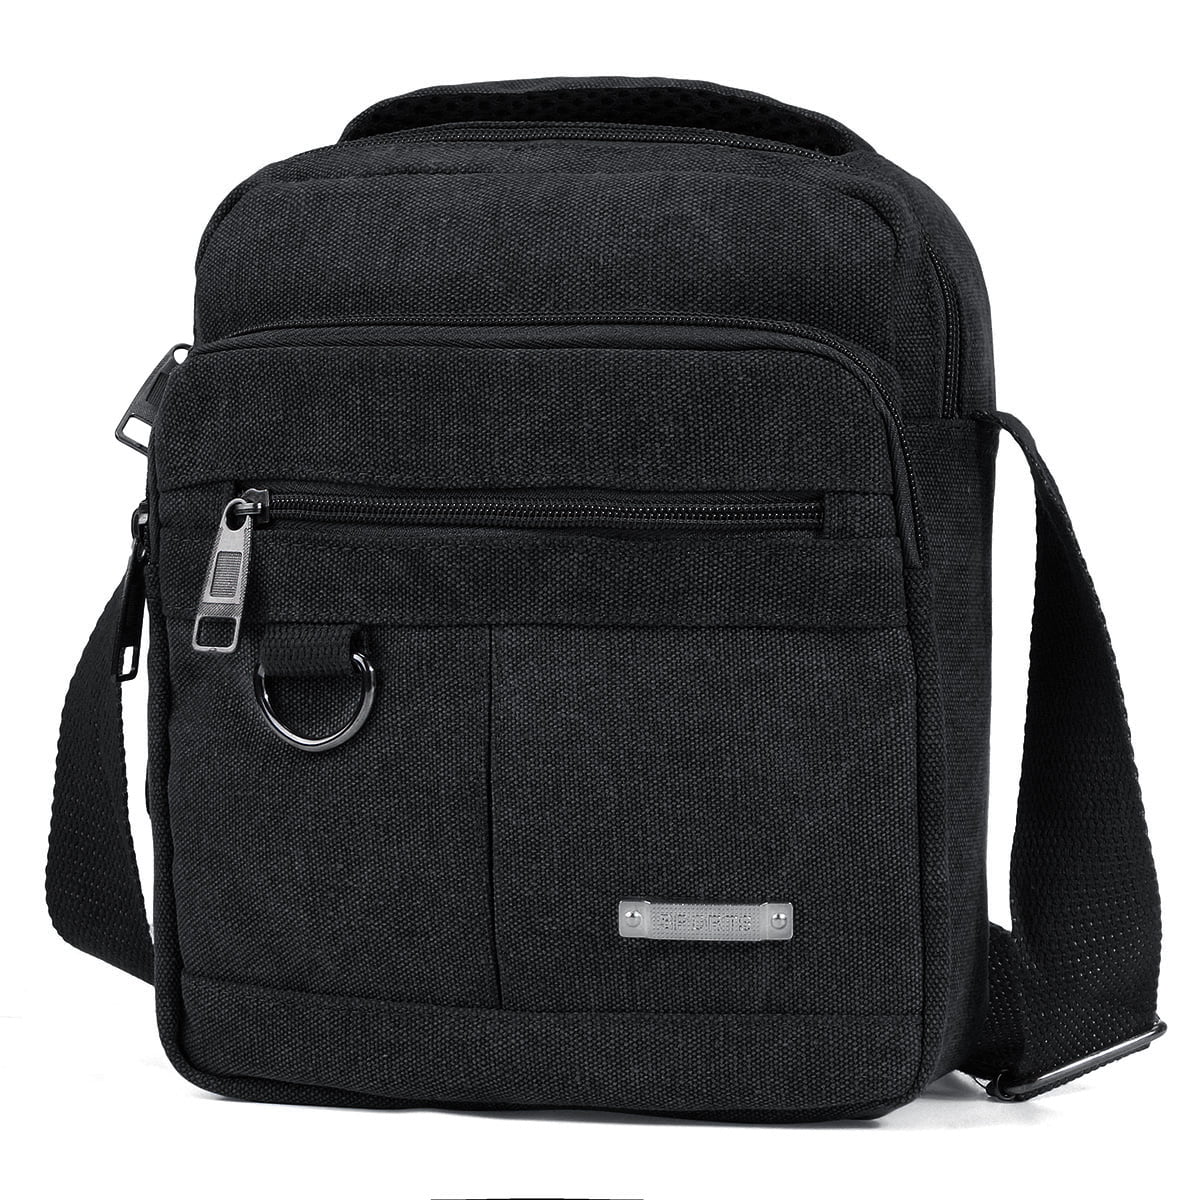 Black Crossbody Shoulder Bags Travel Bag Man Purse Casual Sling Pack for Work Business Mens Messenger Bag 